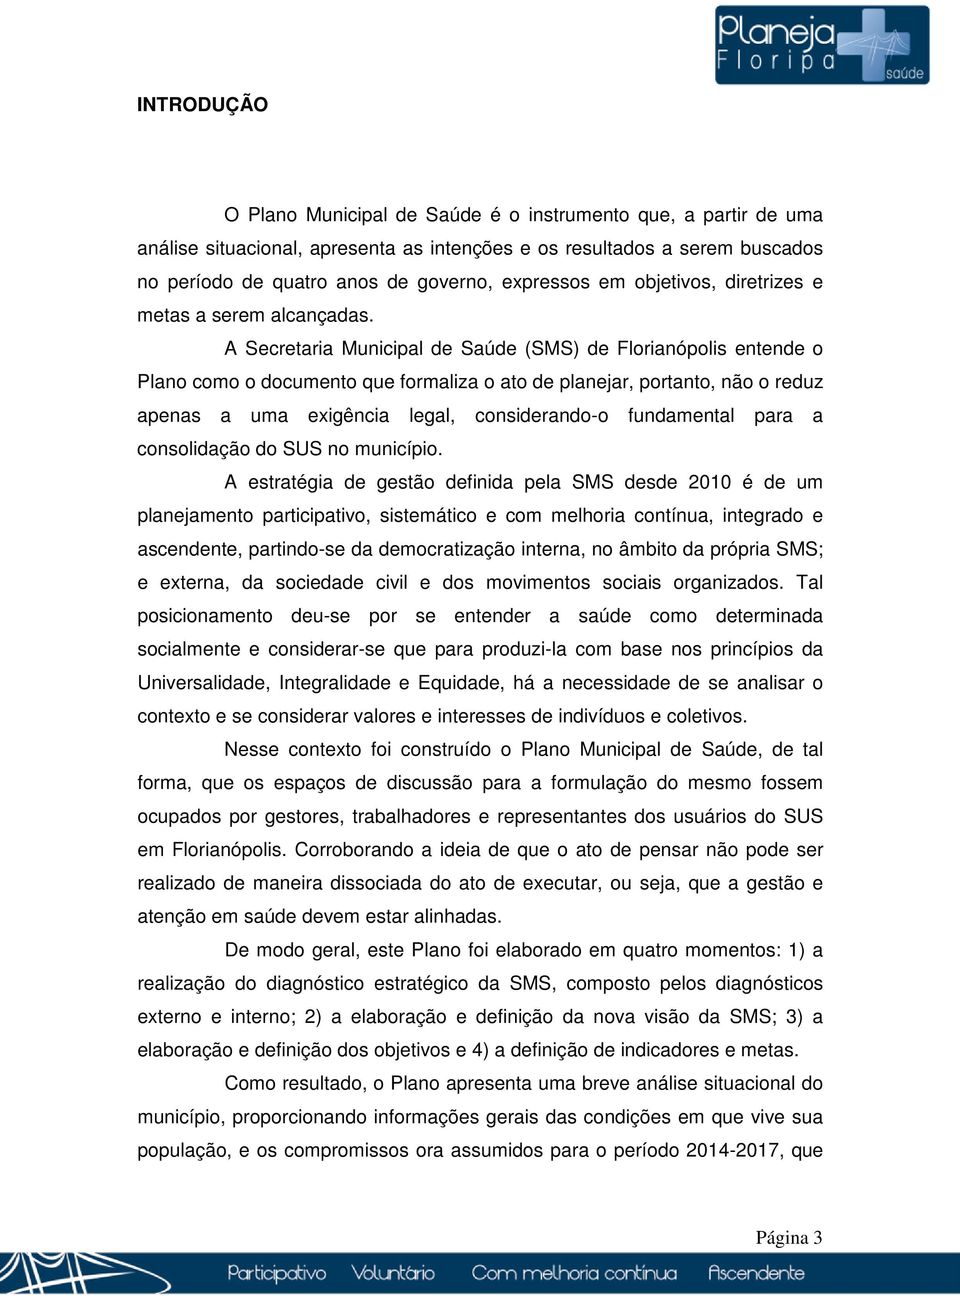 A Secretaria Municipal de Saúde (SMS) de Florianópolis entende o Plano como o documento que formaliza o ato de planejar, portanto, não o reduz apenas a uma exigência legal, considerando-o fundamental